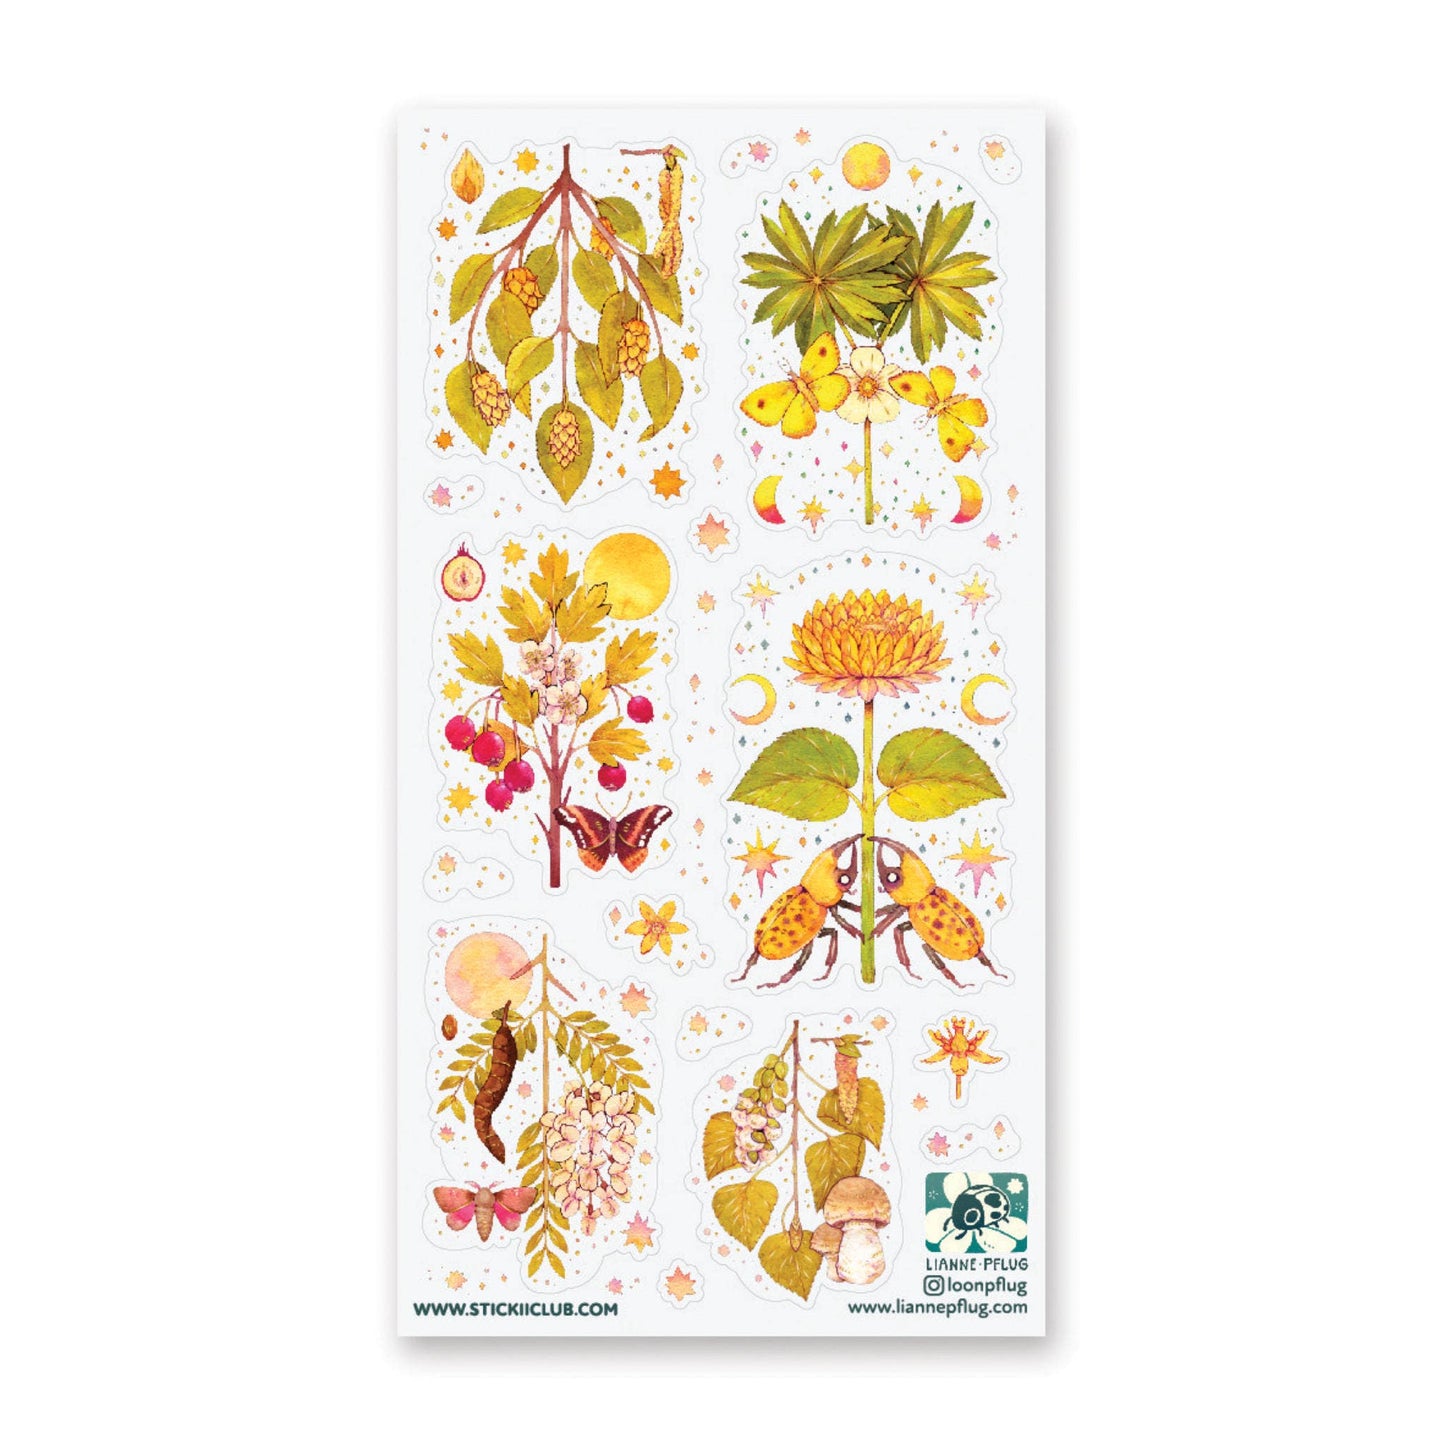 STICKII - Golden Garden Sticker Sheet